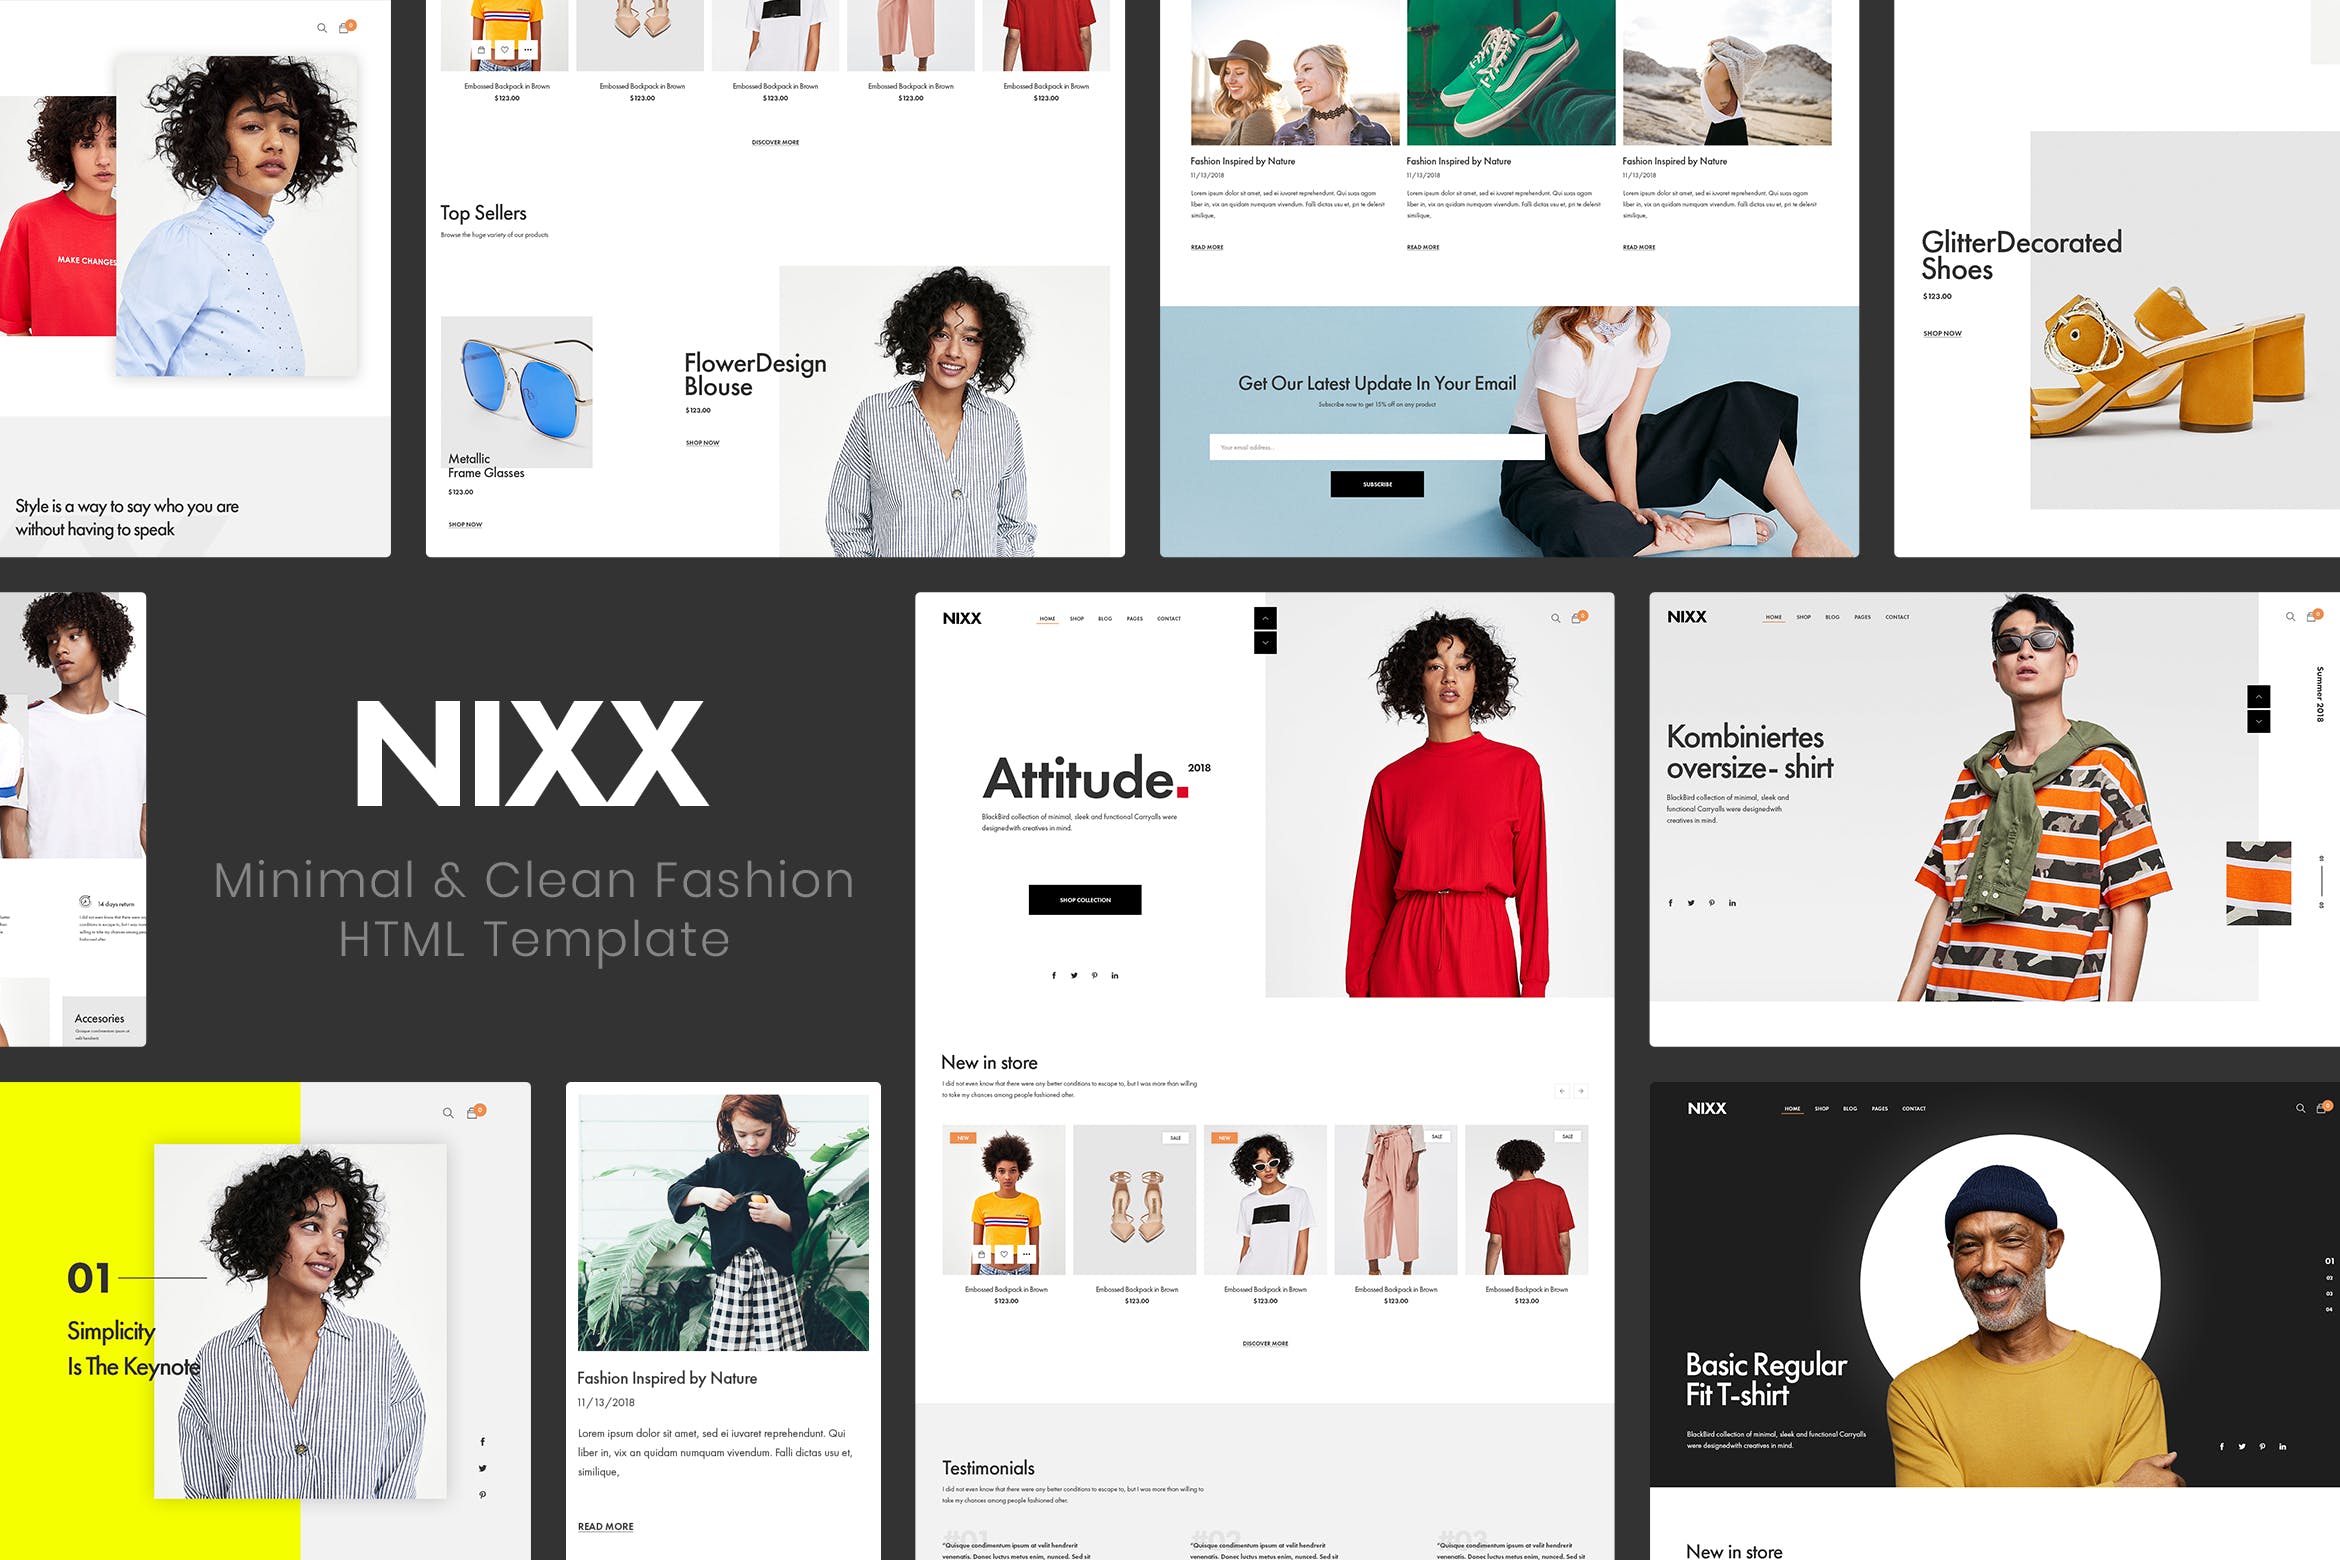 极简主义时尚主题网站HTML网上商城模板普贤居精选 NIXX | Minimal & Clean Fashion HTML Template插图